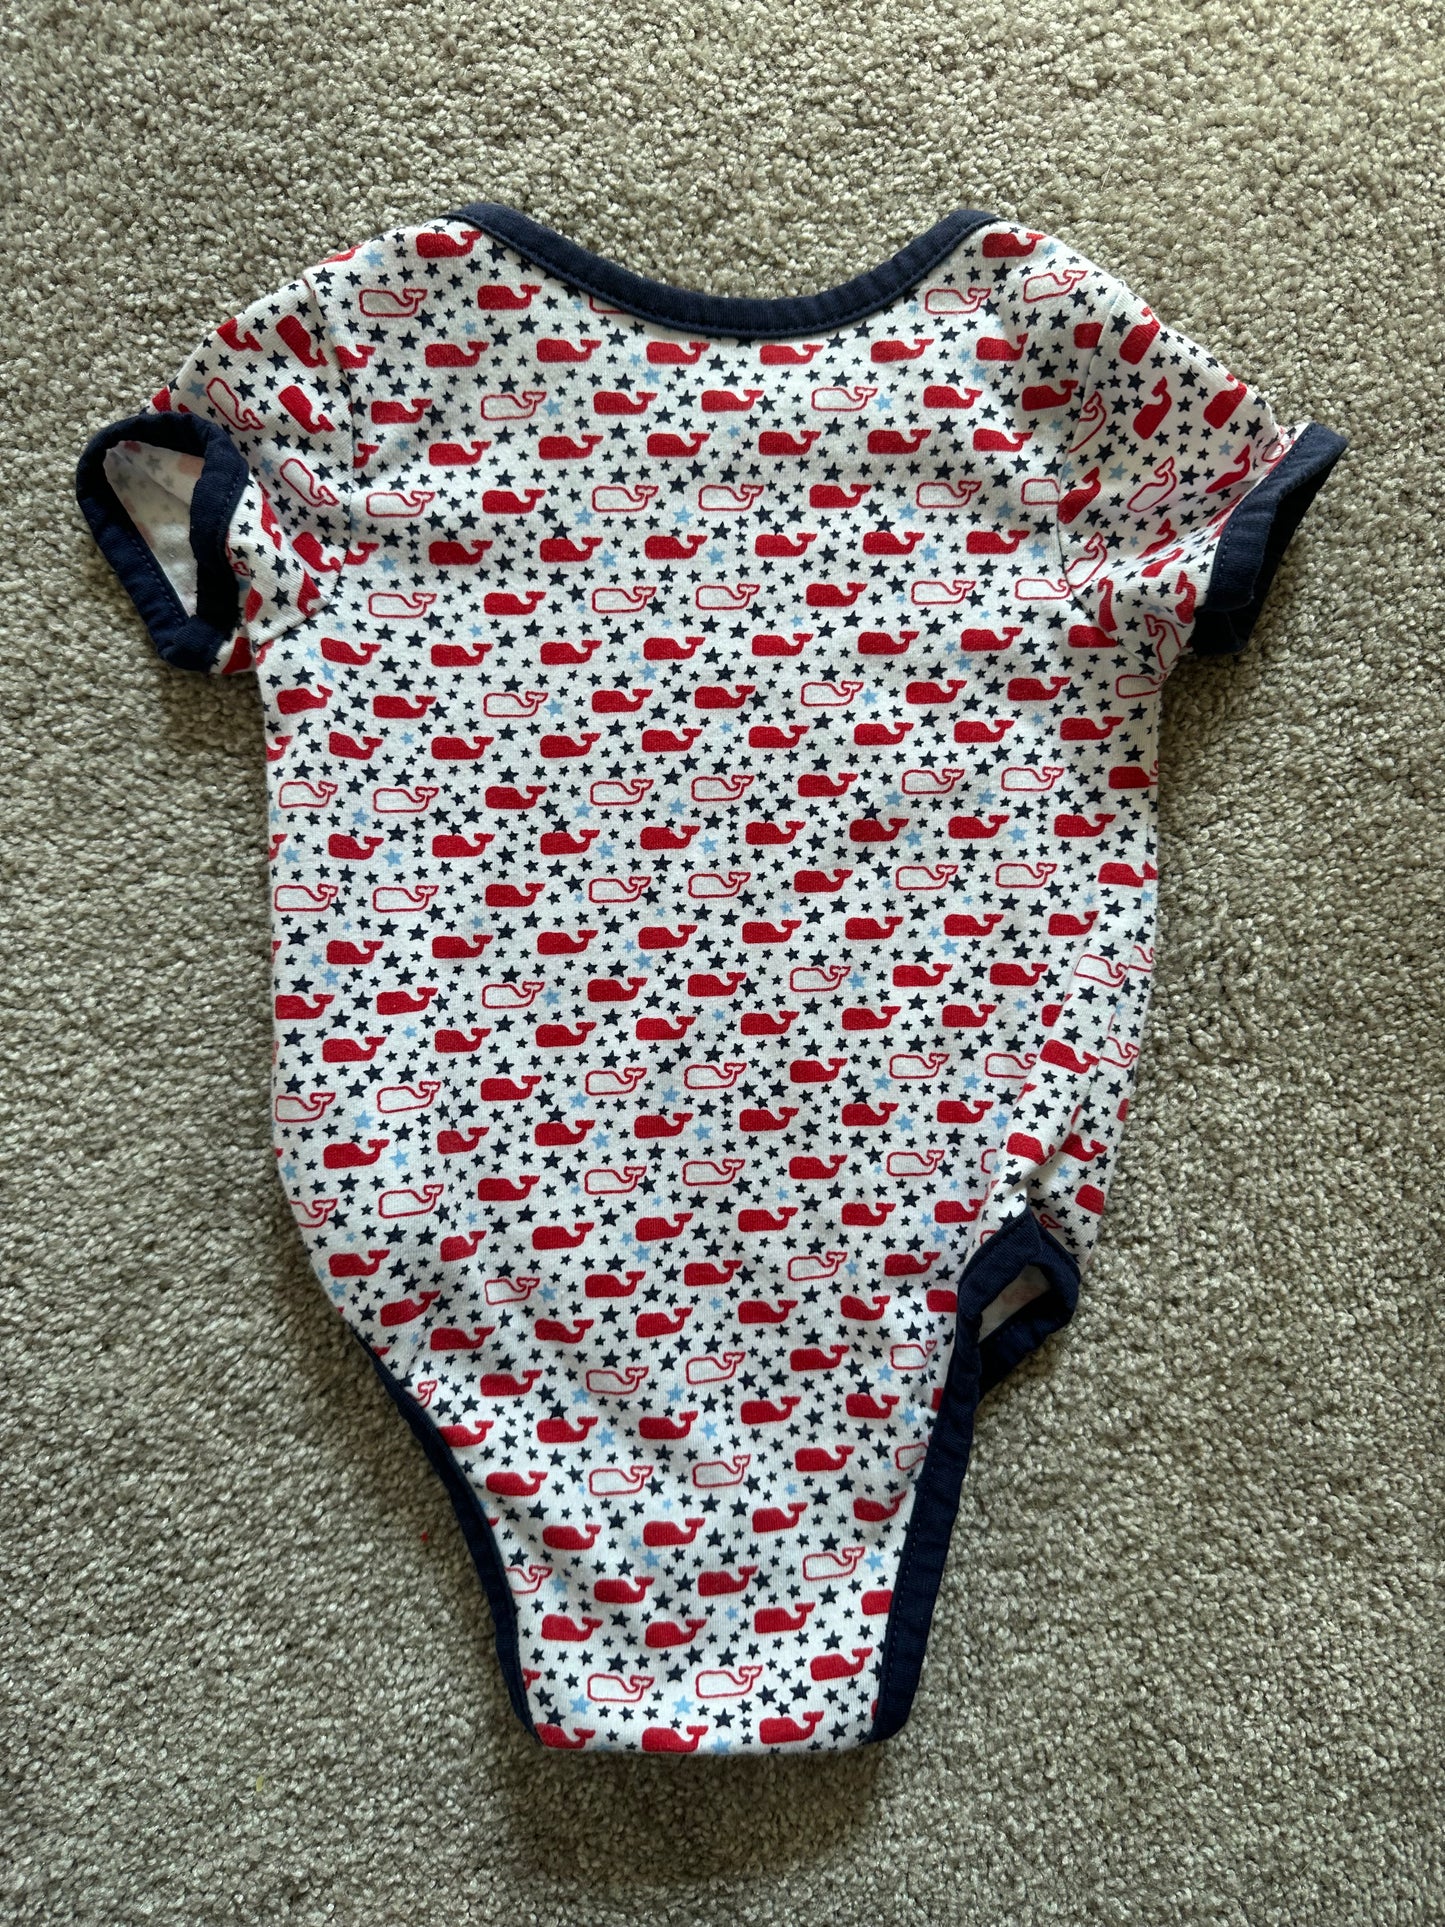 Vineyard Vines | whales & stars bodysuit | gender neutral | red, white, & blue | 0-3 months